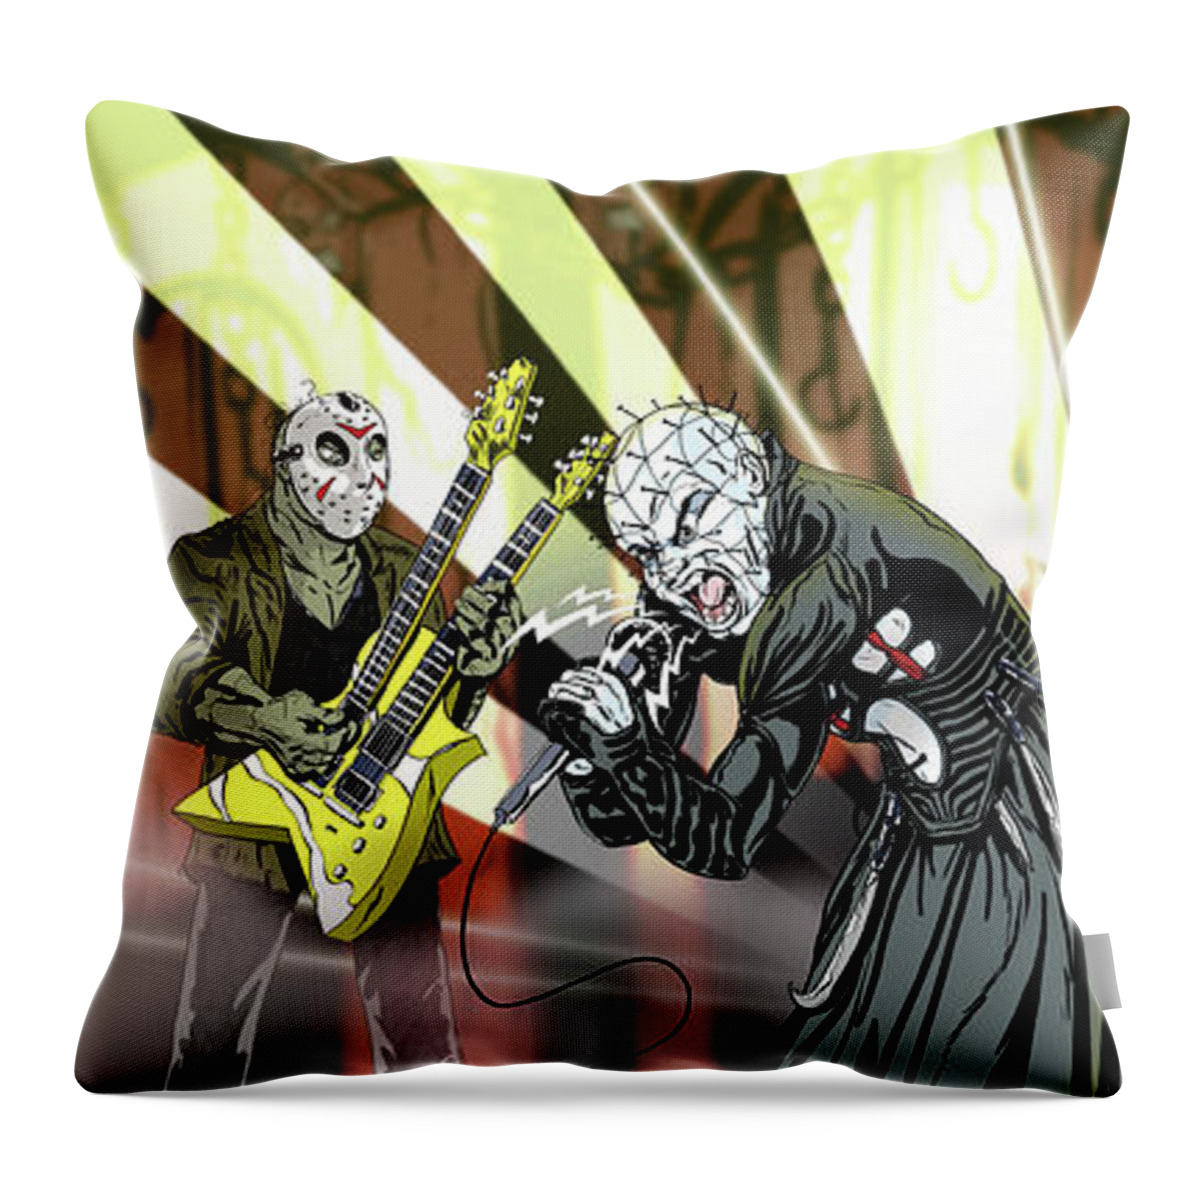 Horror Throw Pillow featuring the digital art Monsters of Rock by Kynn Peterkin